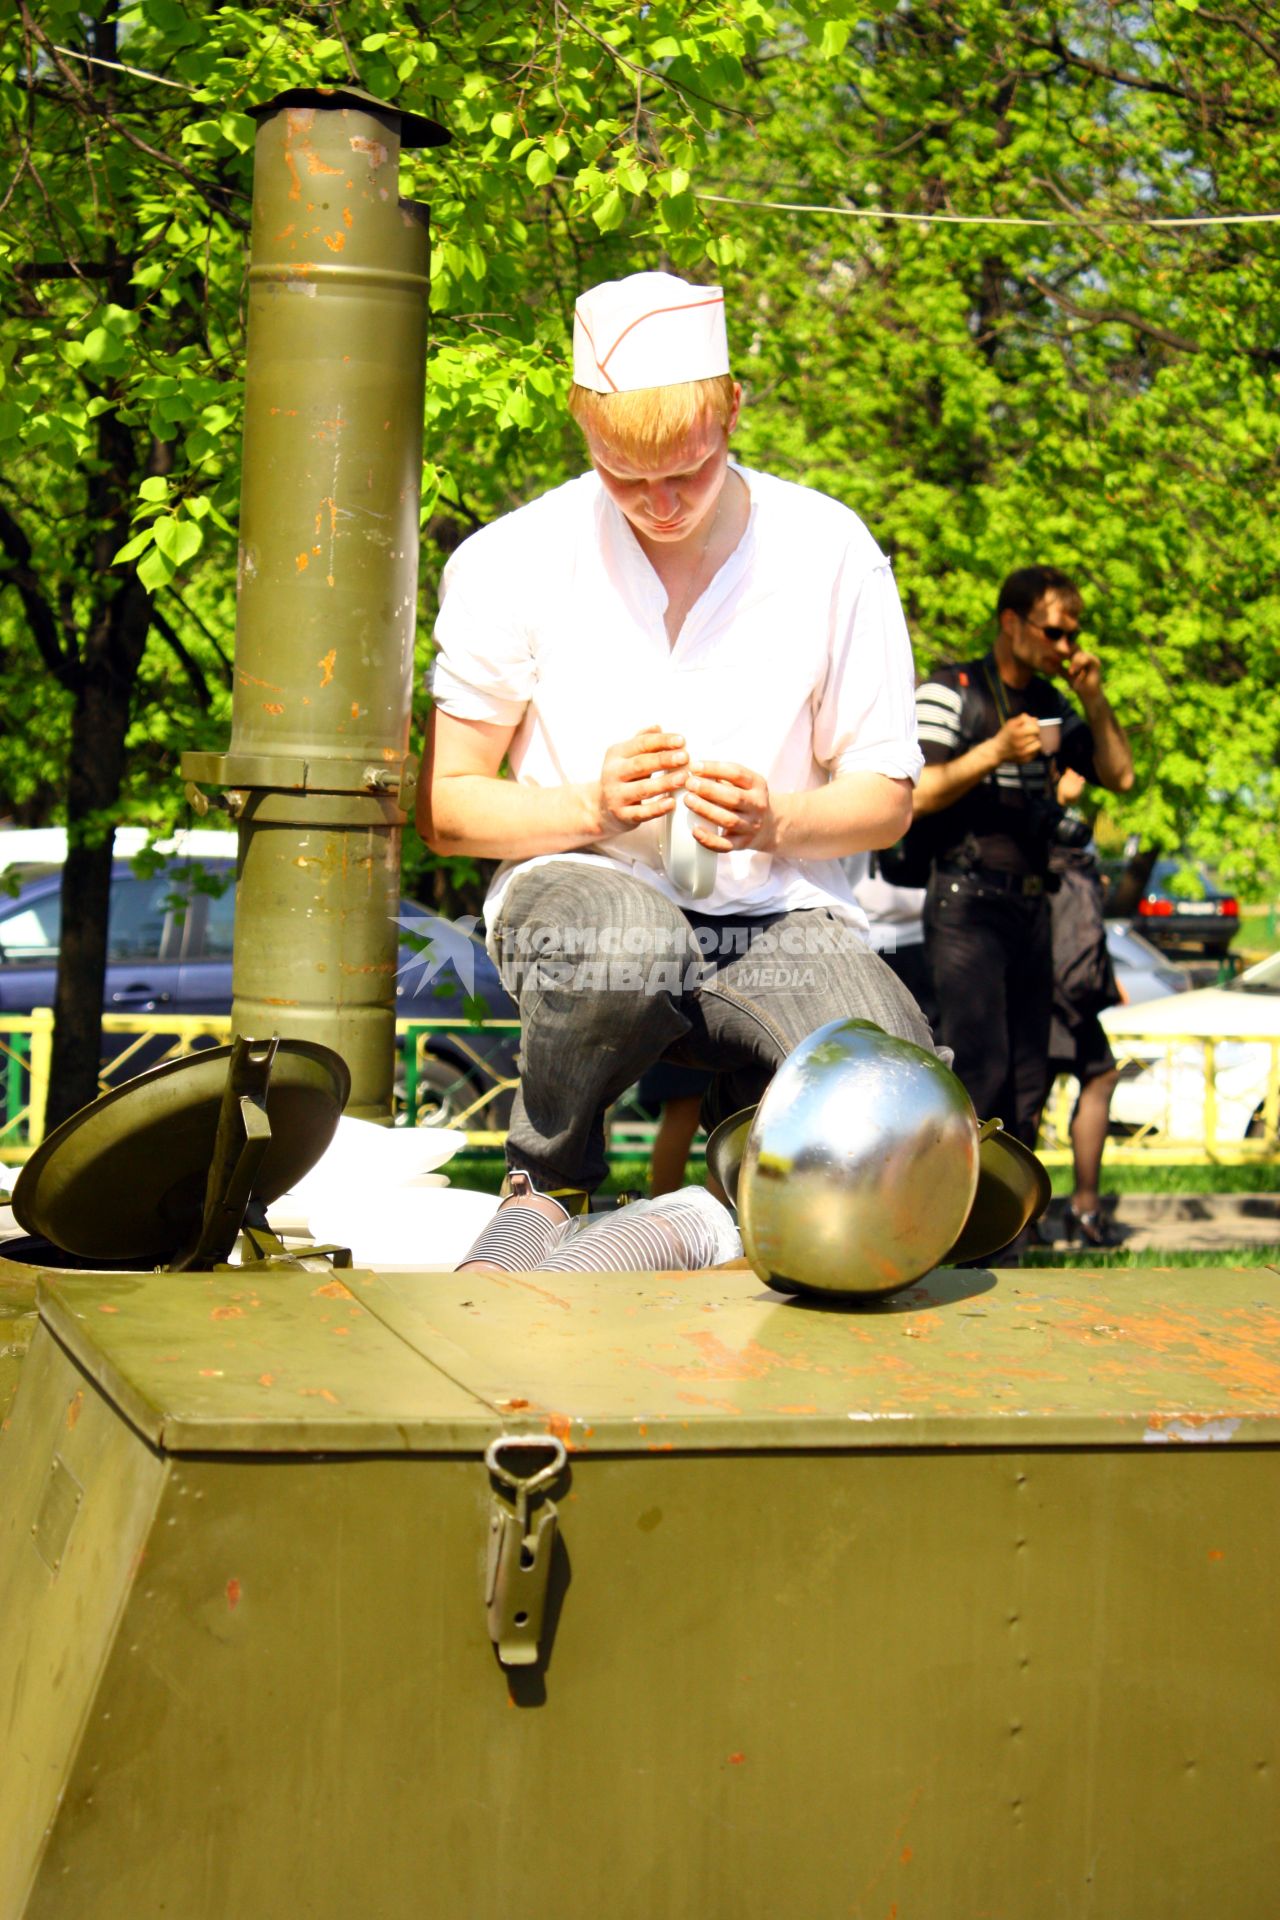 Москва 09 мая 2010 год. Военно-полевая кухня. Армейская еда.